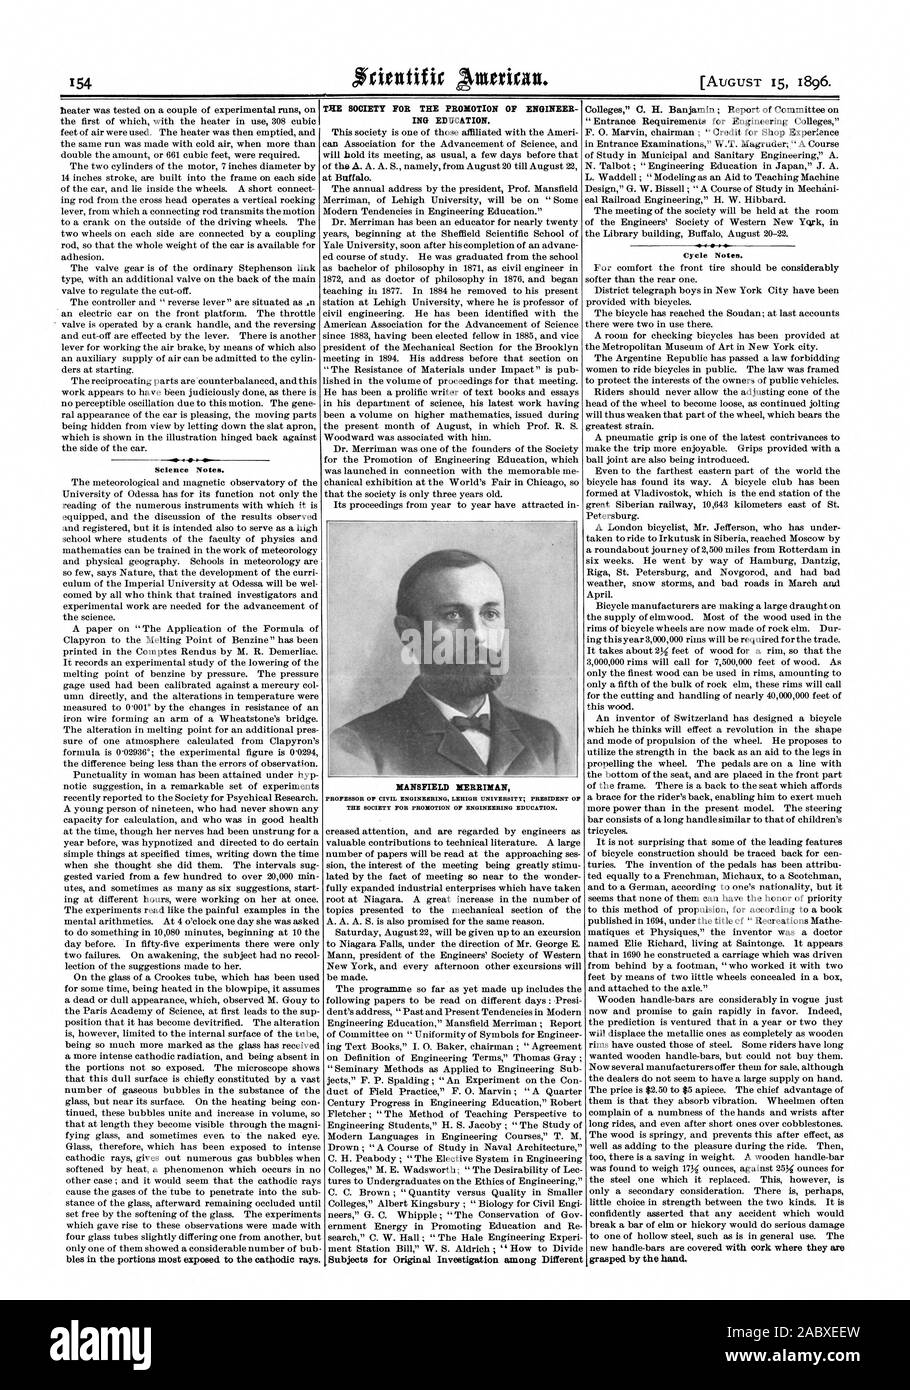 La scienza note. La società per la promozione dell'ingegnere ING l'istruzione. MANSFIELD MERRIMAN Cycle note., Scientific American, 1896-08-15 Foto Stock